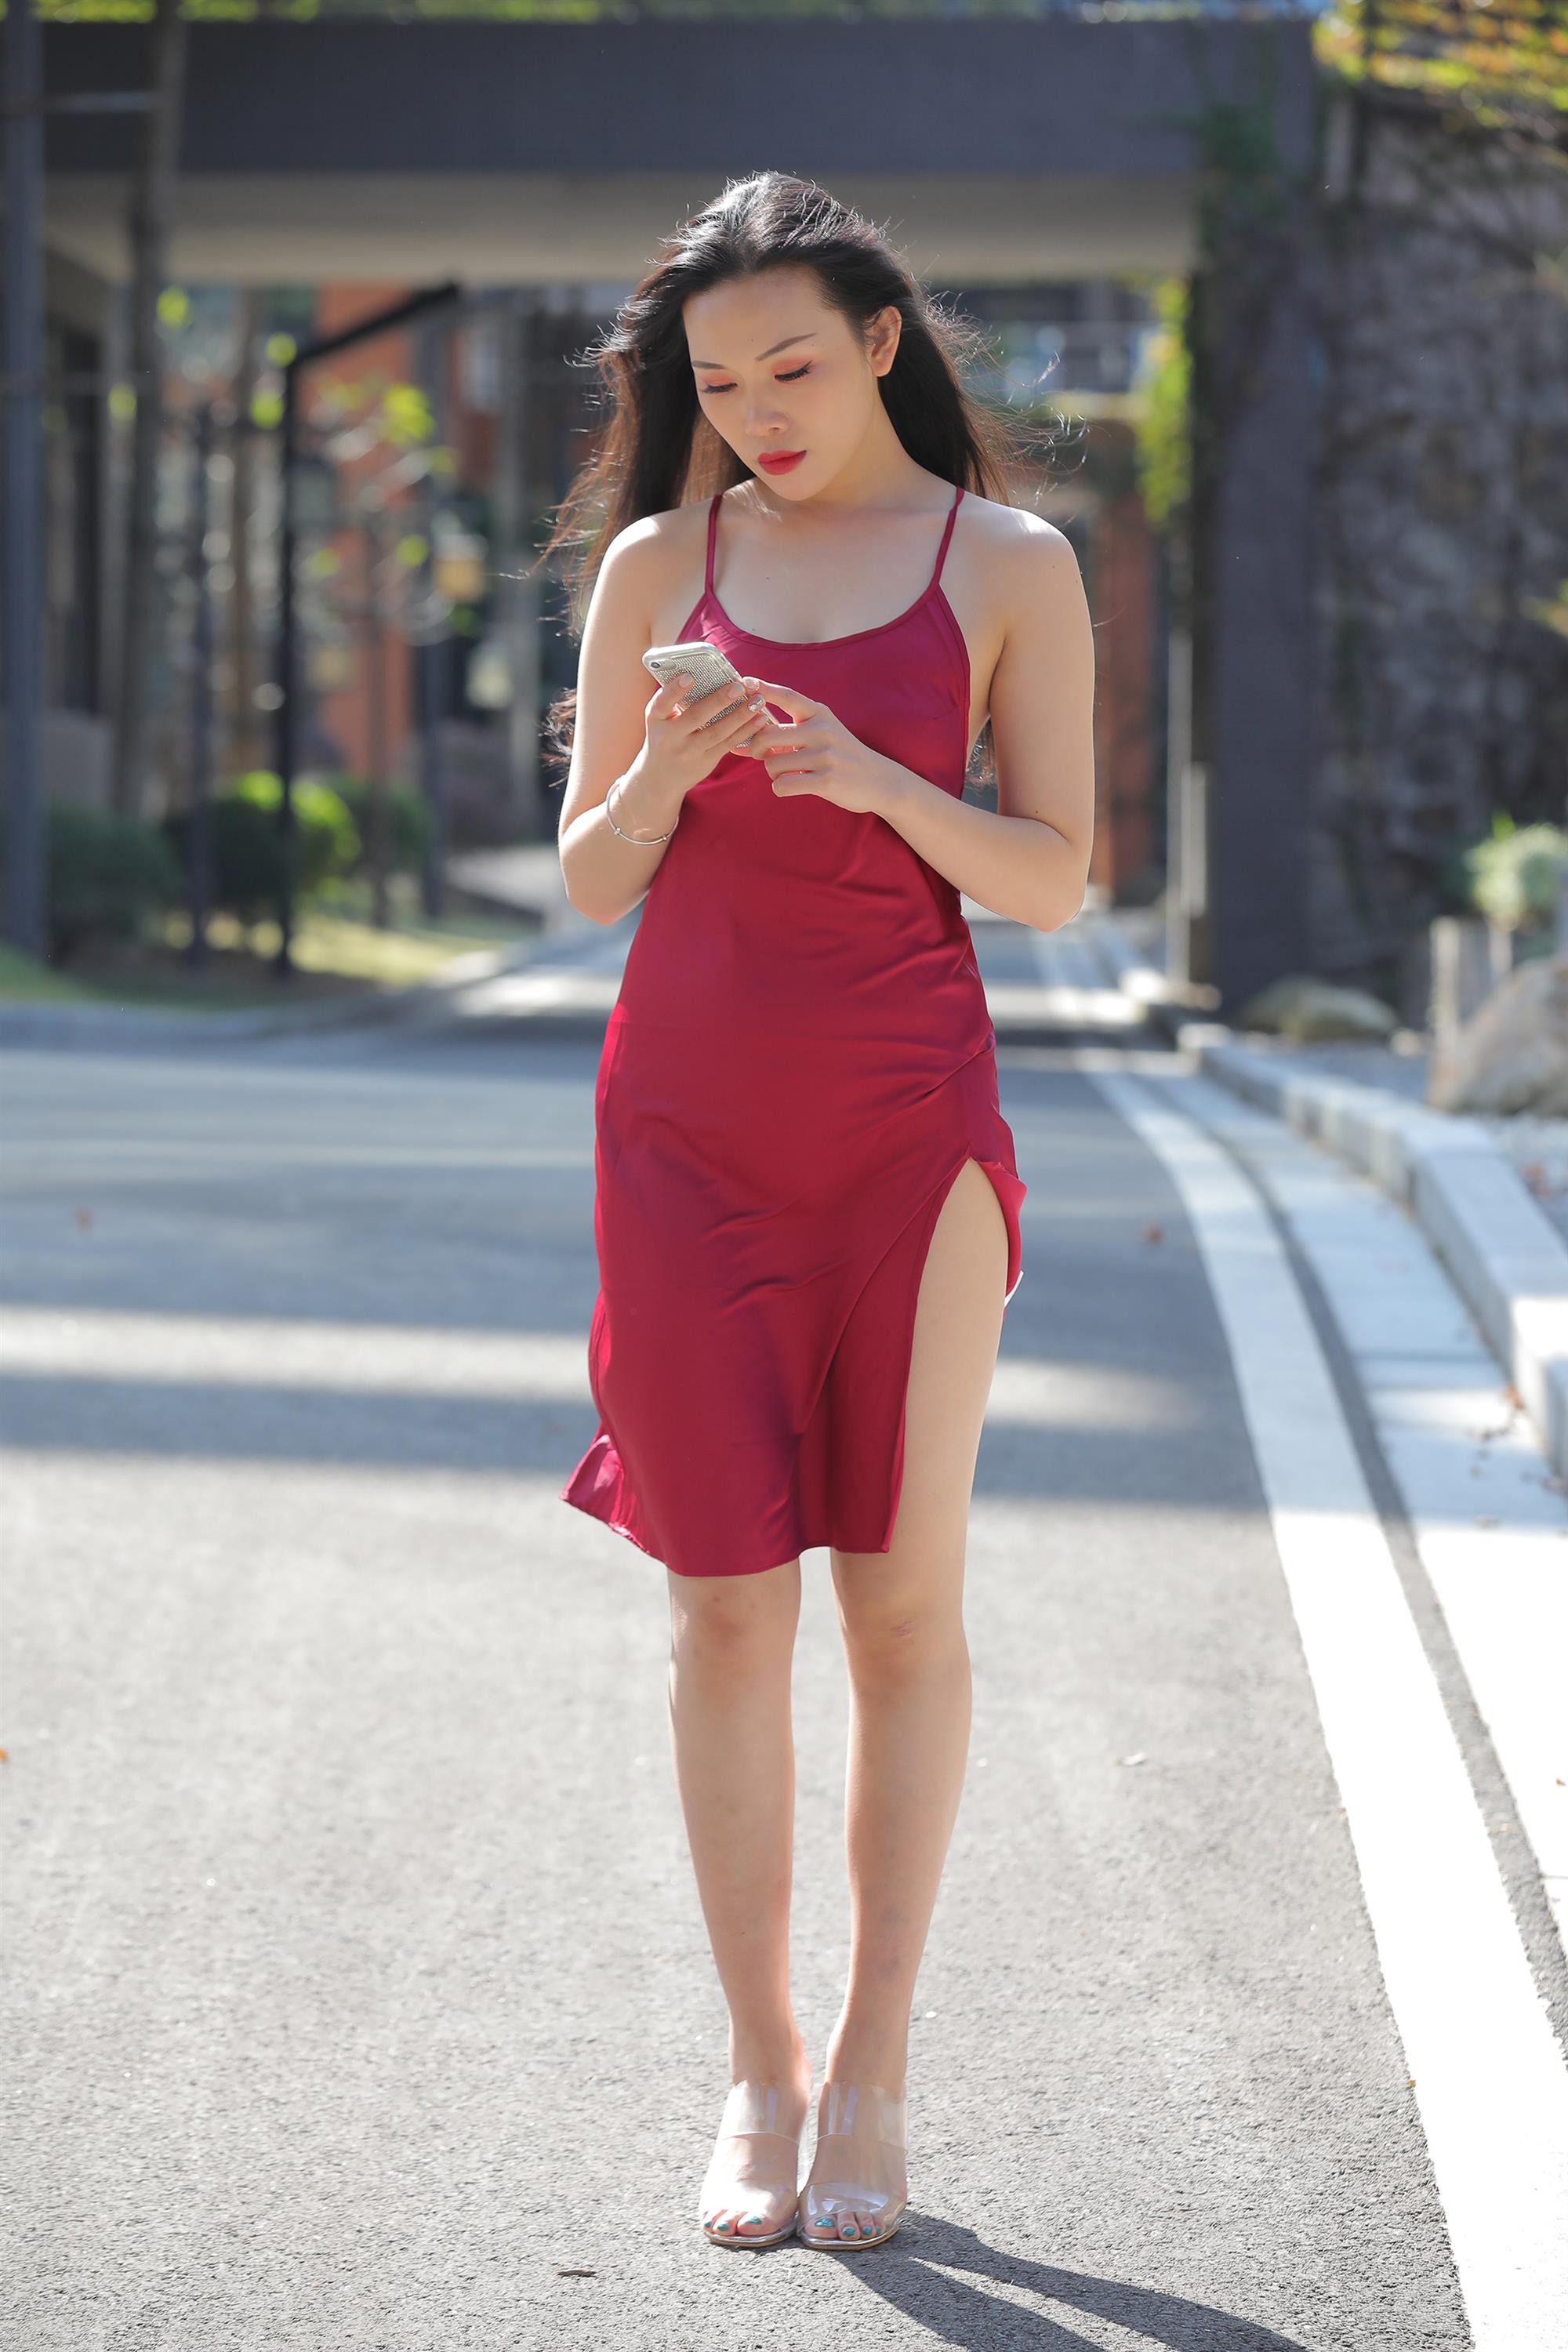 Street beauty in a red dress - 52.jpg